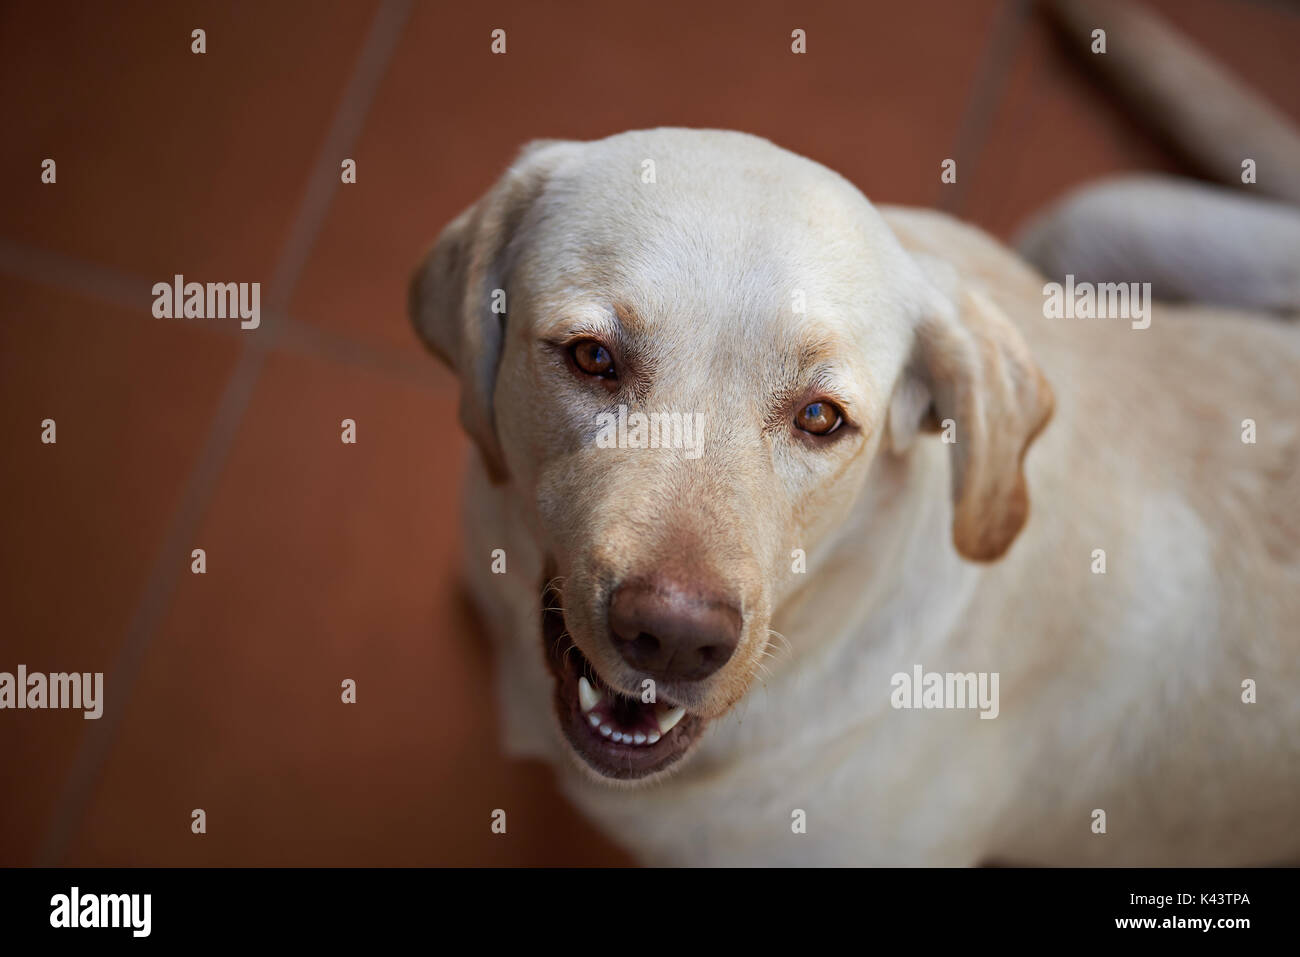 Cute Portrait von Labrador Hund Blick von oben. Über portrait Retriever Hund  Stockfotografie - Alamy